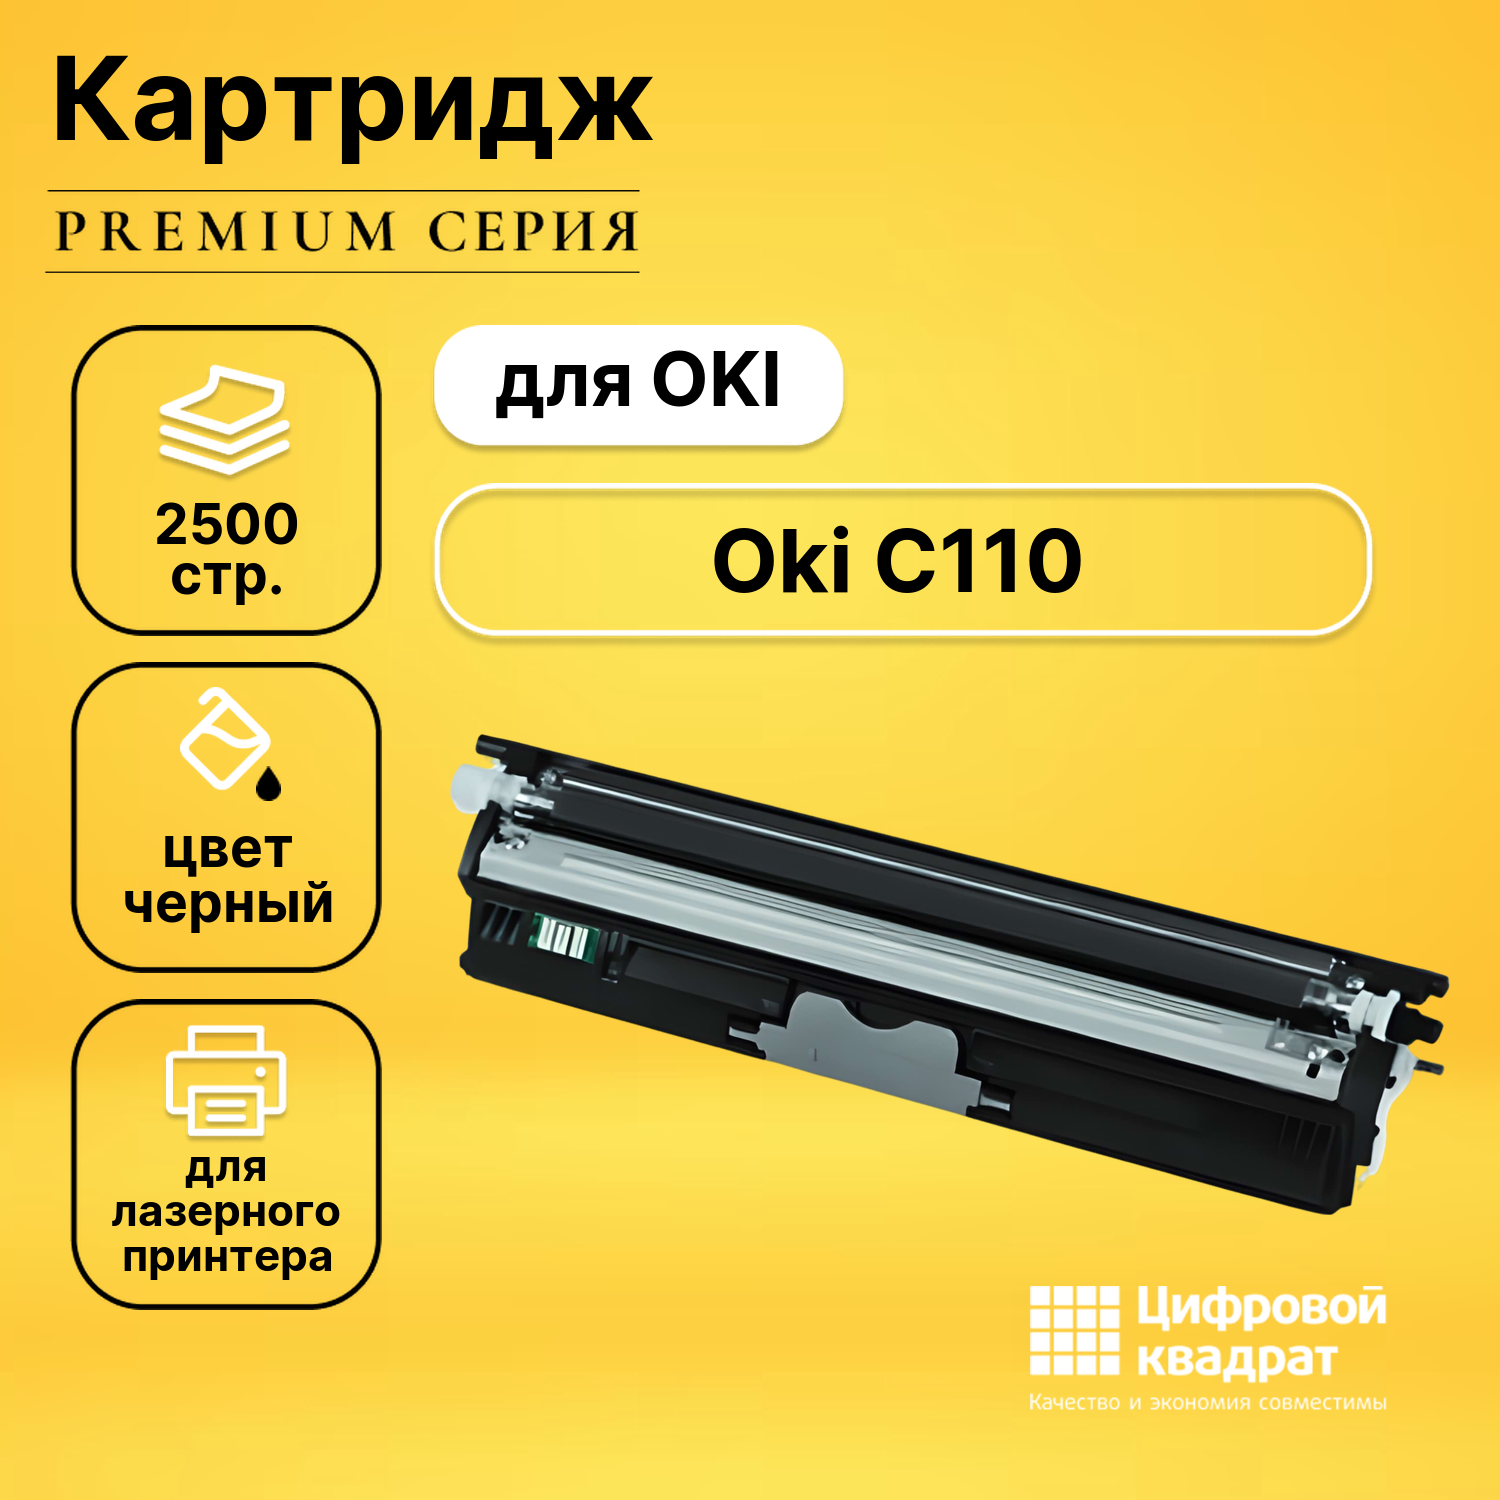 Картридж DS для OKI C110 совместимый